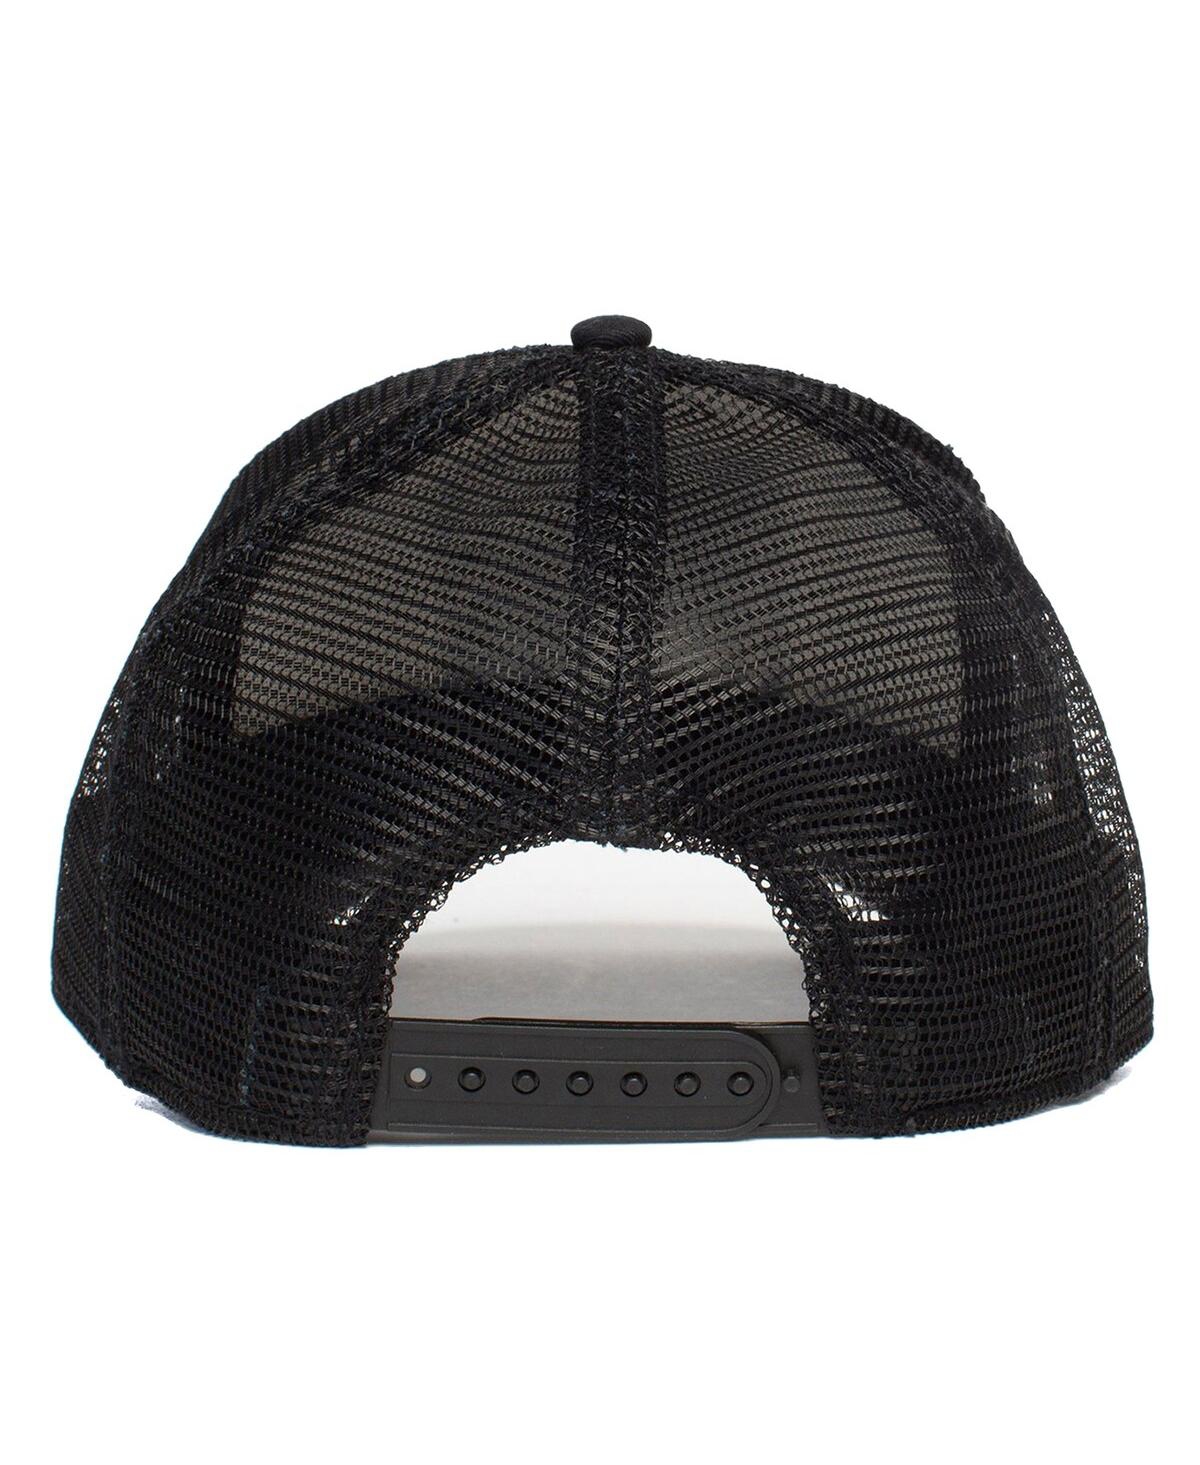 Shop Goorin Bros Men's Black Pigeon Trucker Adjustable Hat